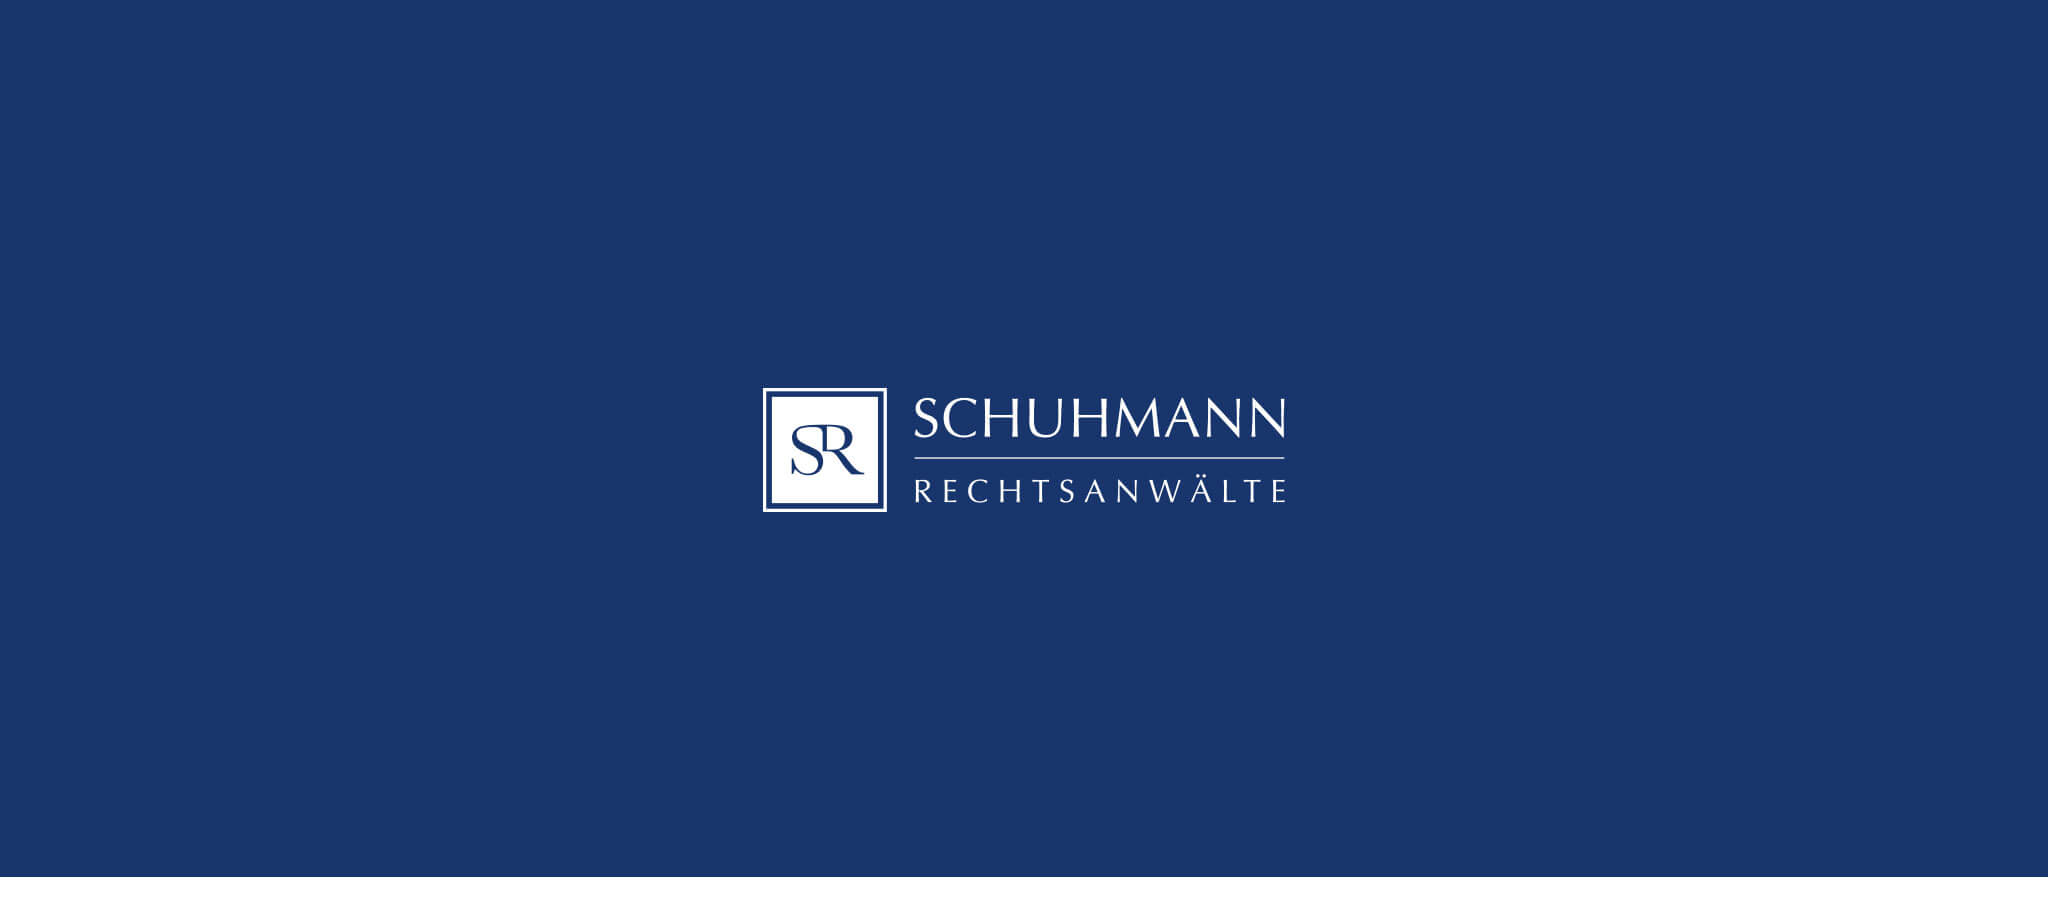 Schuhmann Anwälte in München, Berlin und Würzburg